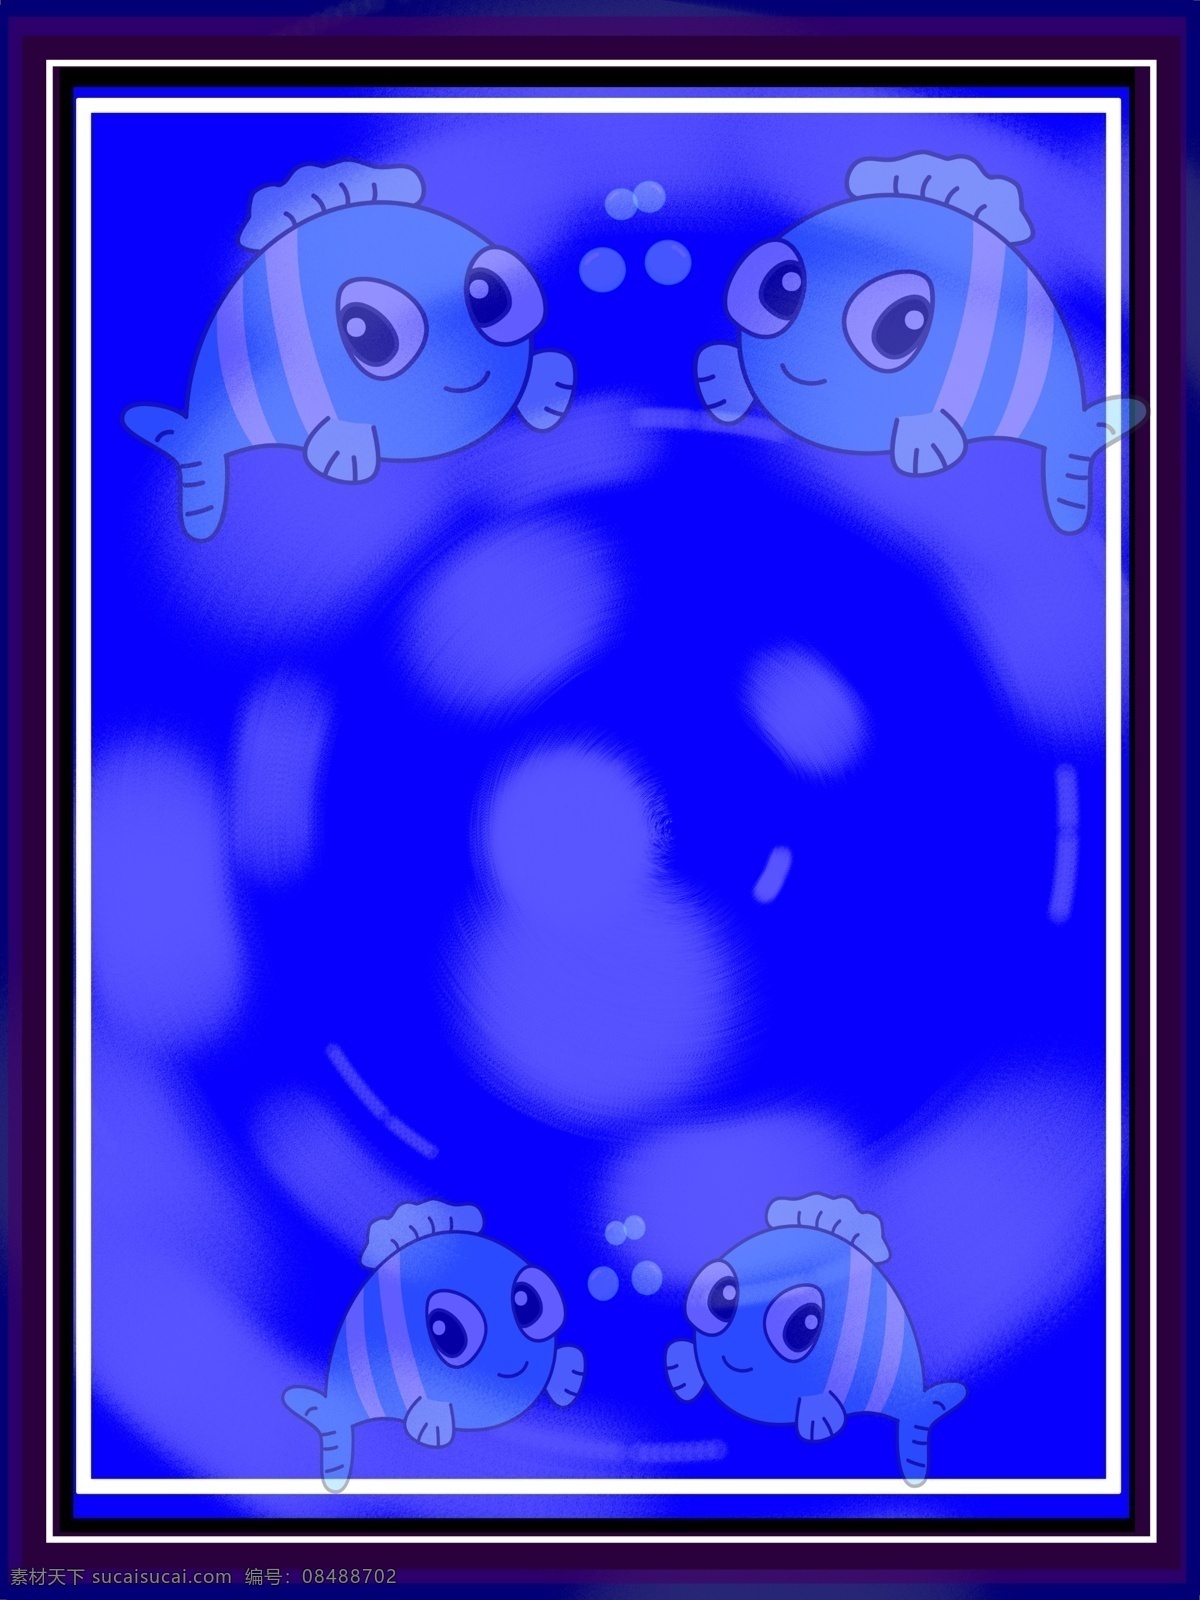 湛蓝 海底 卡通 鱼 背景 边框 相框 深海 湛蓝海底 可爱卡通鱼 梦幻背景